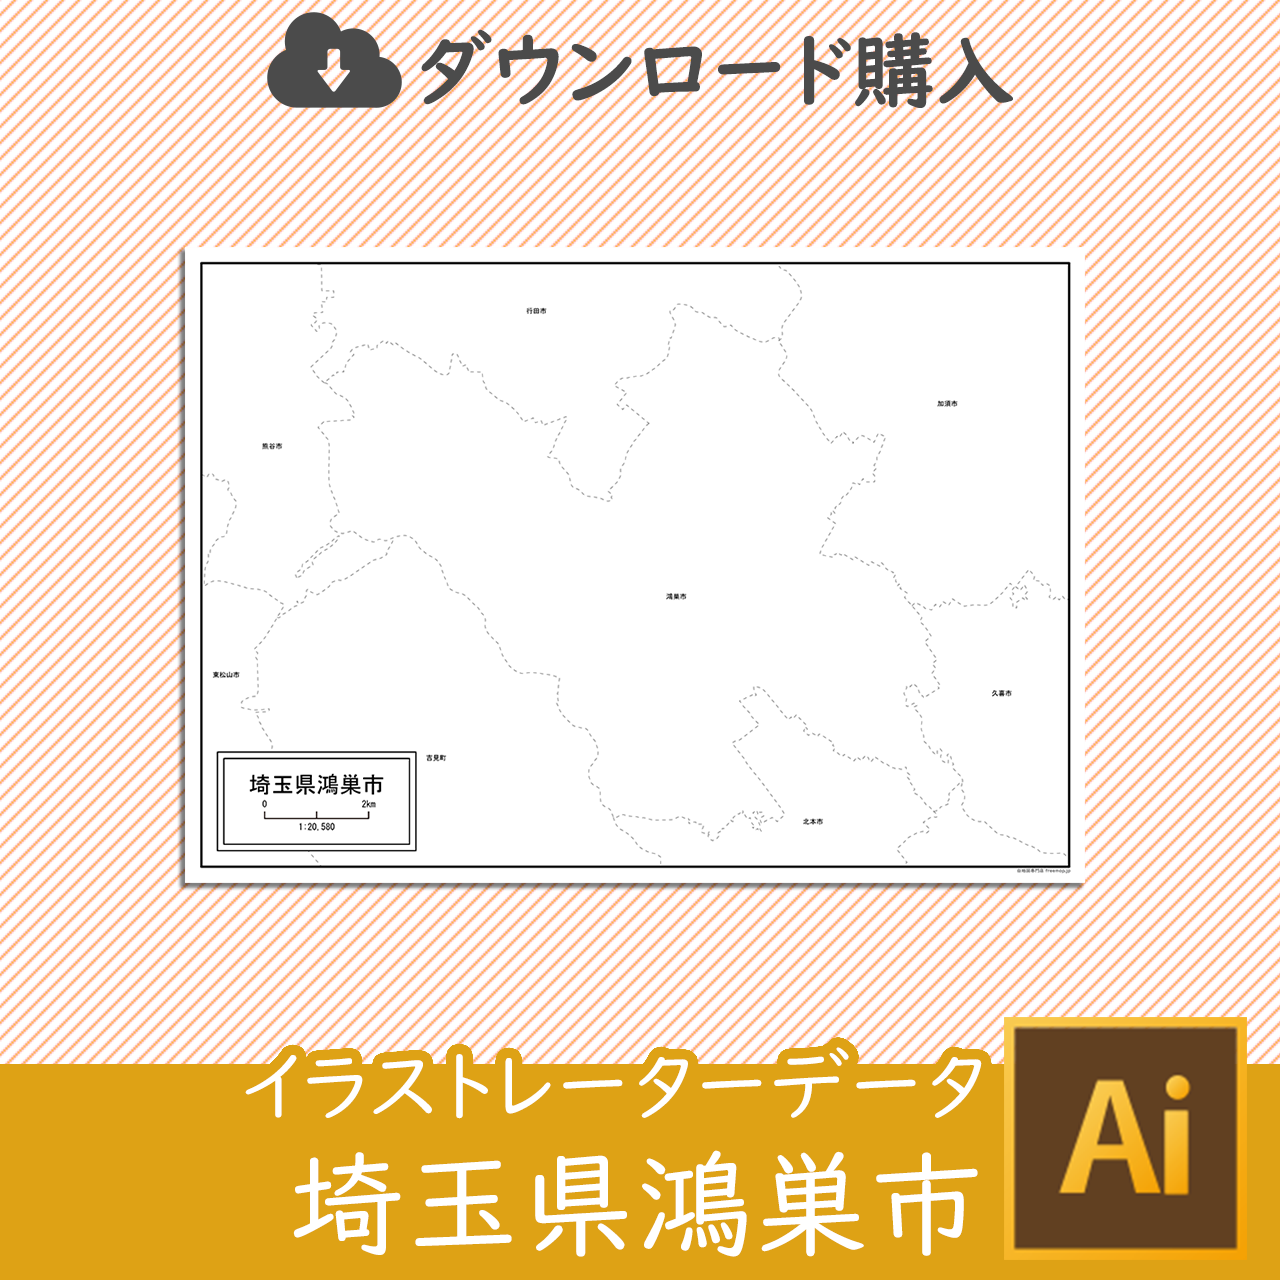 鴻巣市のaiデータのサムネイル画像